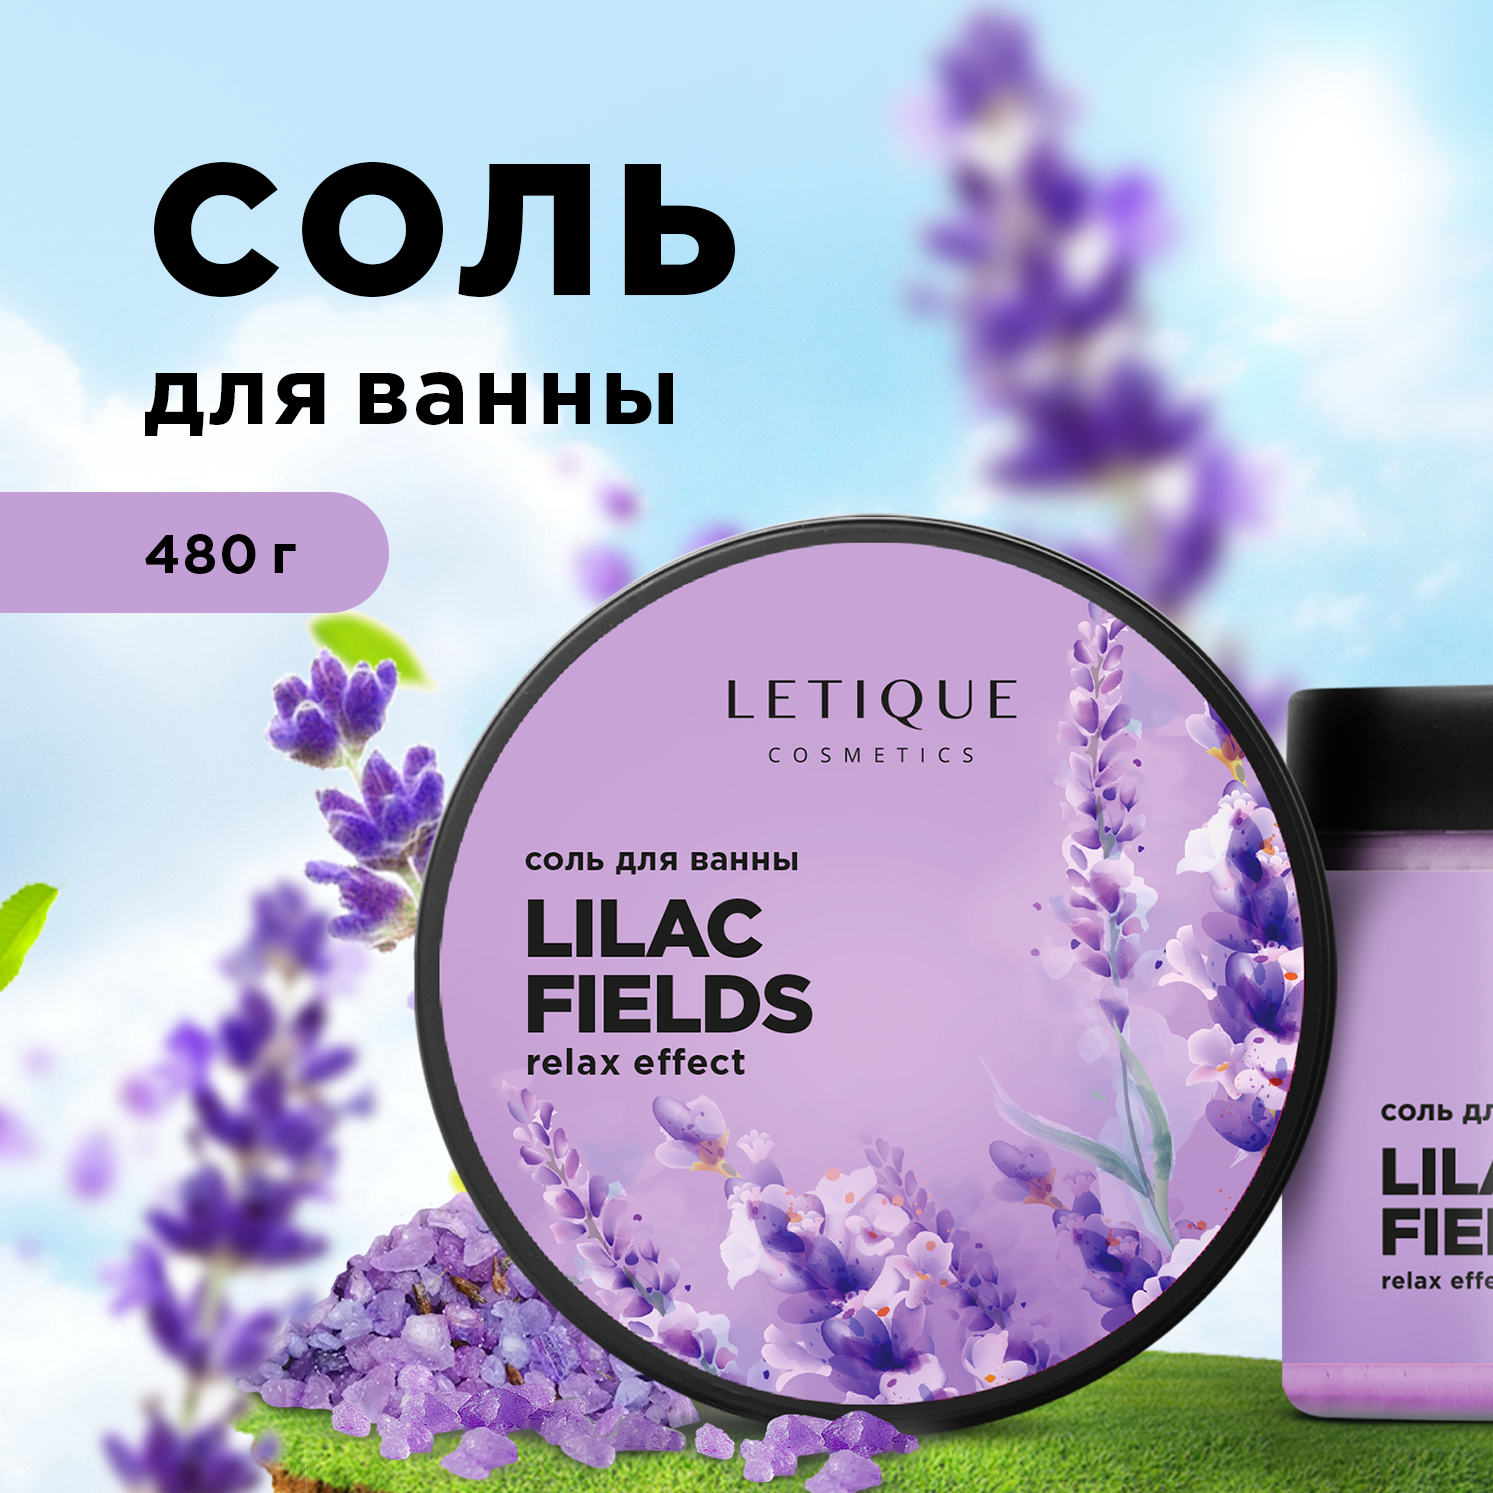 Соль Для Ванны Letique Cosmetics Lilac Fields 480 Г bisou очная соль для ванны антистресс с ками лаванды 330